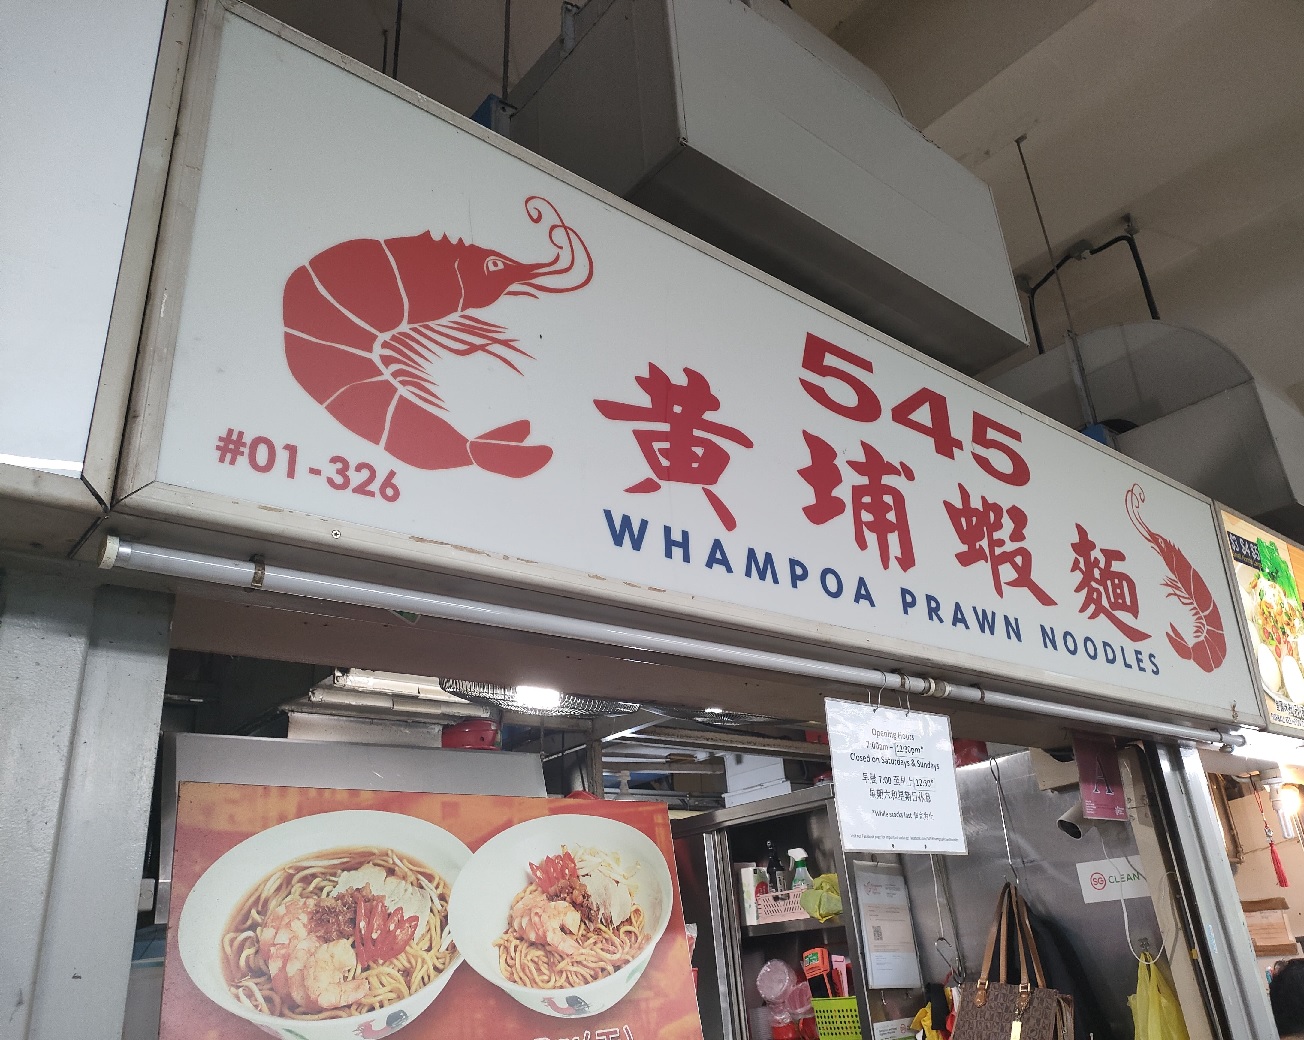 545 Whampoa Prawn Noodles(01-326)